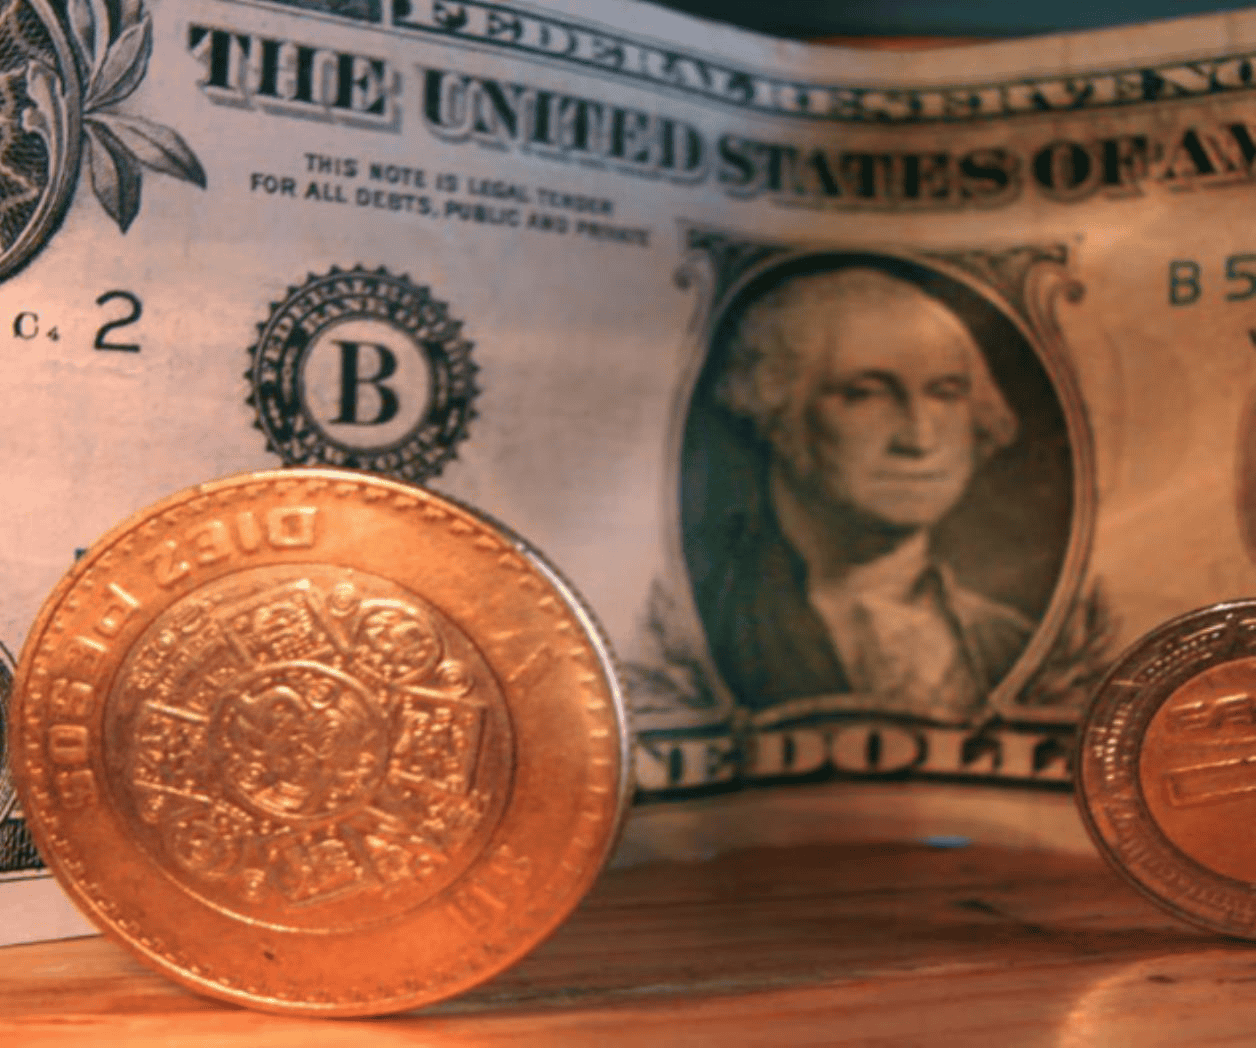 El dólar abre en 16.82 pesos tras repunte de la inflación en EU